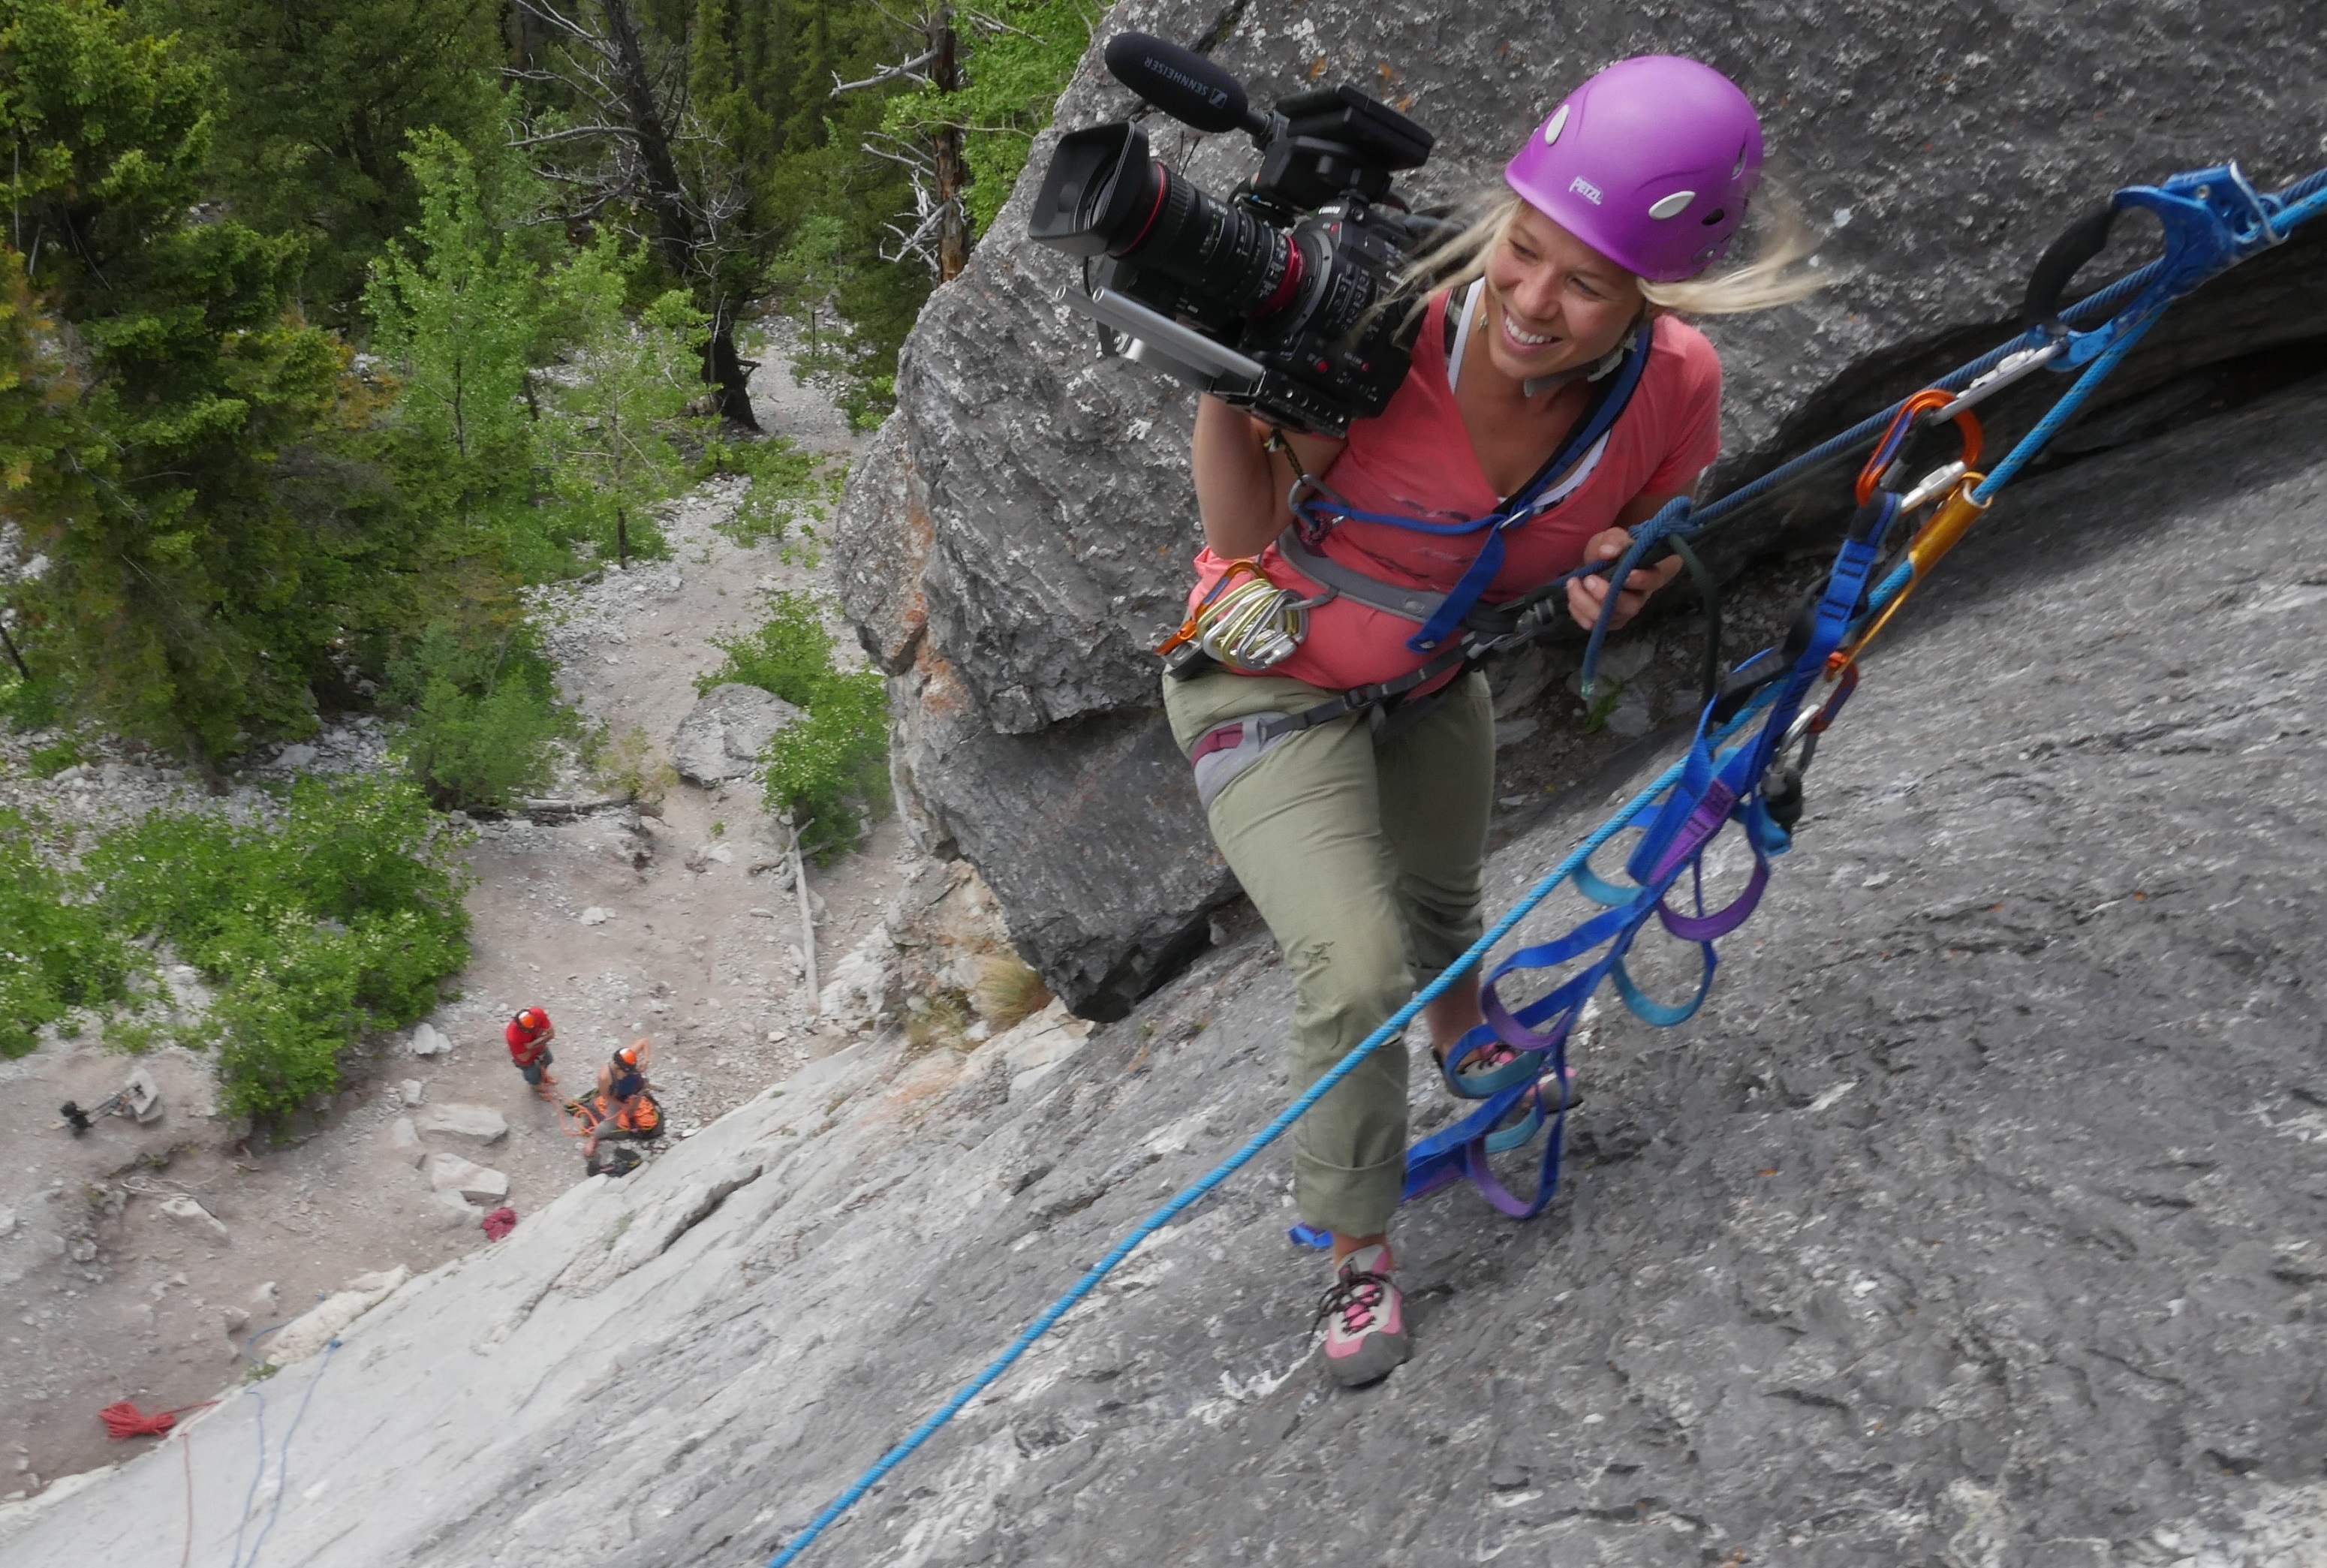 Filmmaker rock climbing with filming equipment